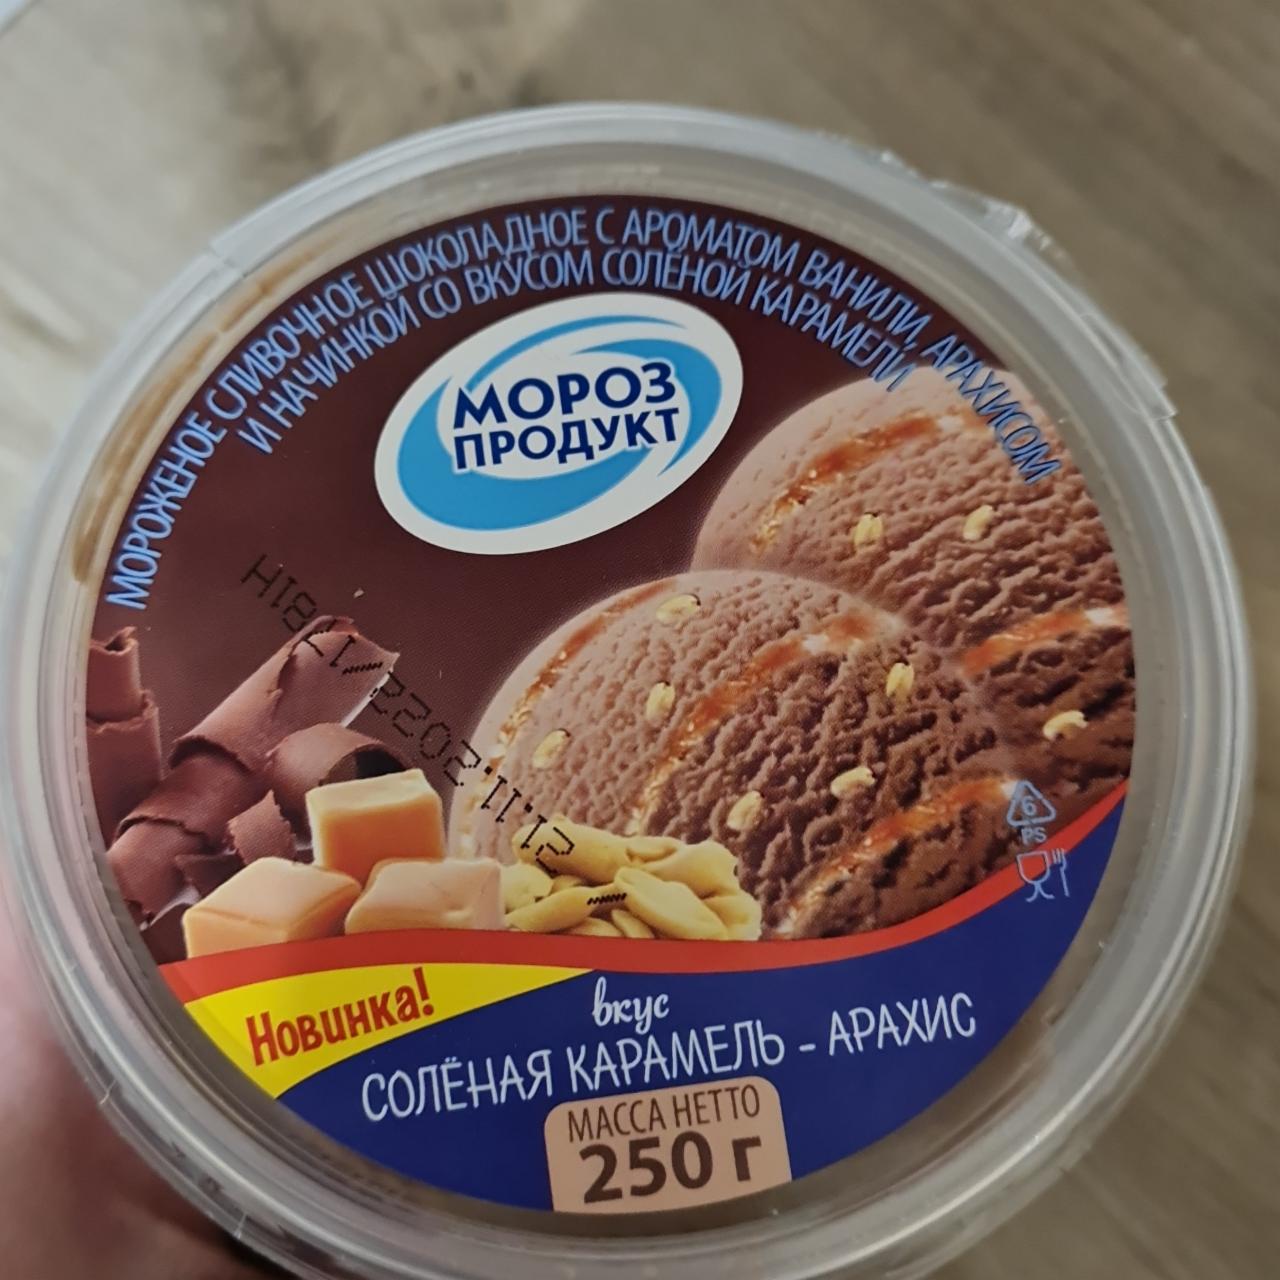 Фото - мороженое шоколадное вкус солёная карамель-арахис Мороз продукт